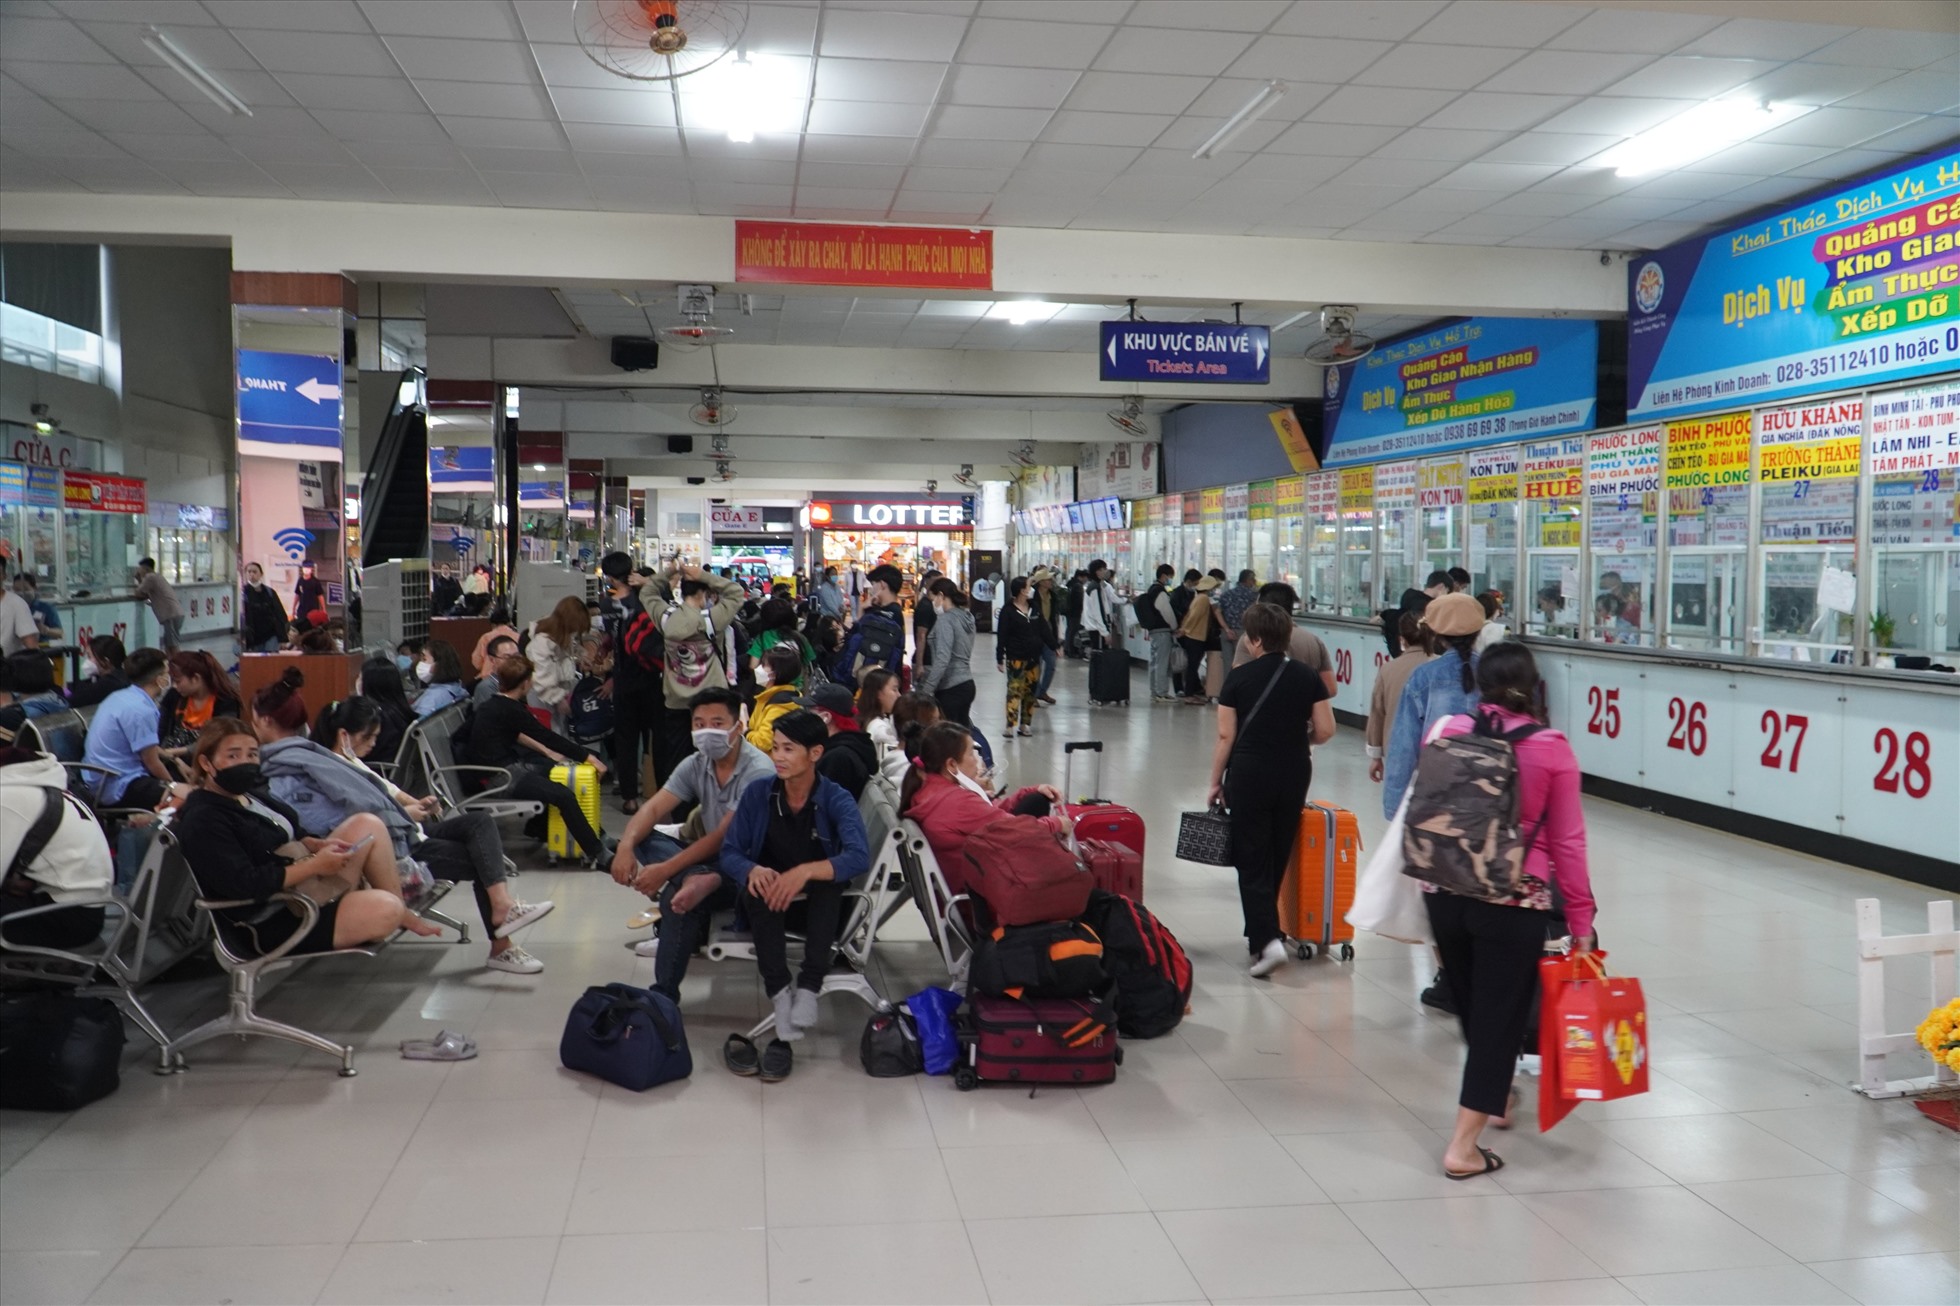 Tương tự, đại diện Bến xe Miền Đông cũ (quận Bình Thạnh) cho biết lượng khách qua bến xe vào ngày 16.1 khoảng 12.000 hành khách.